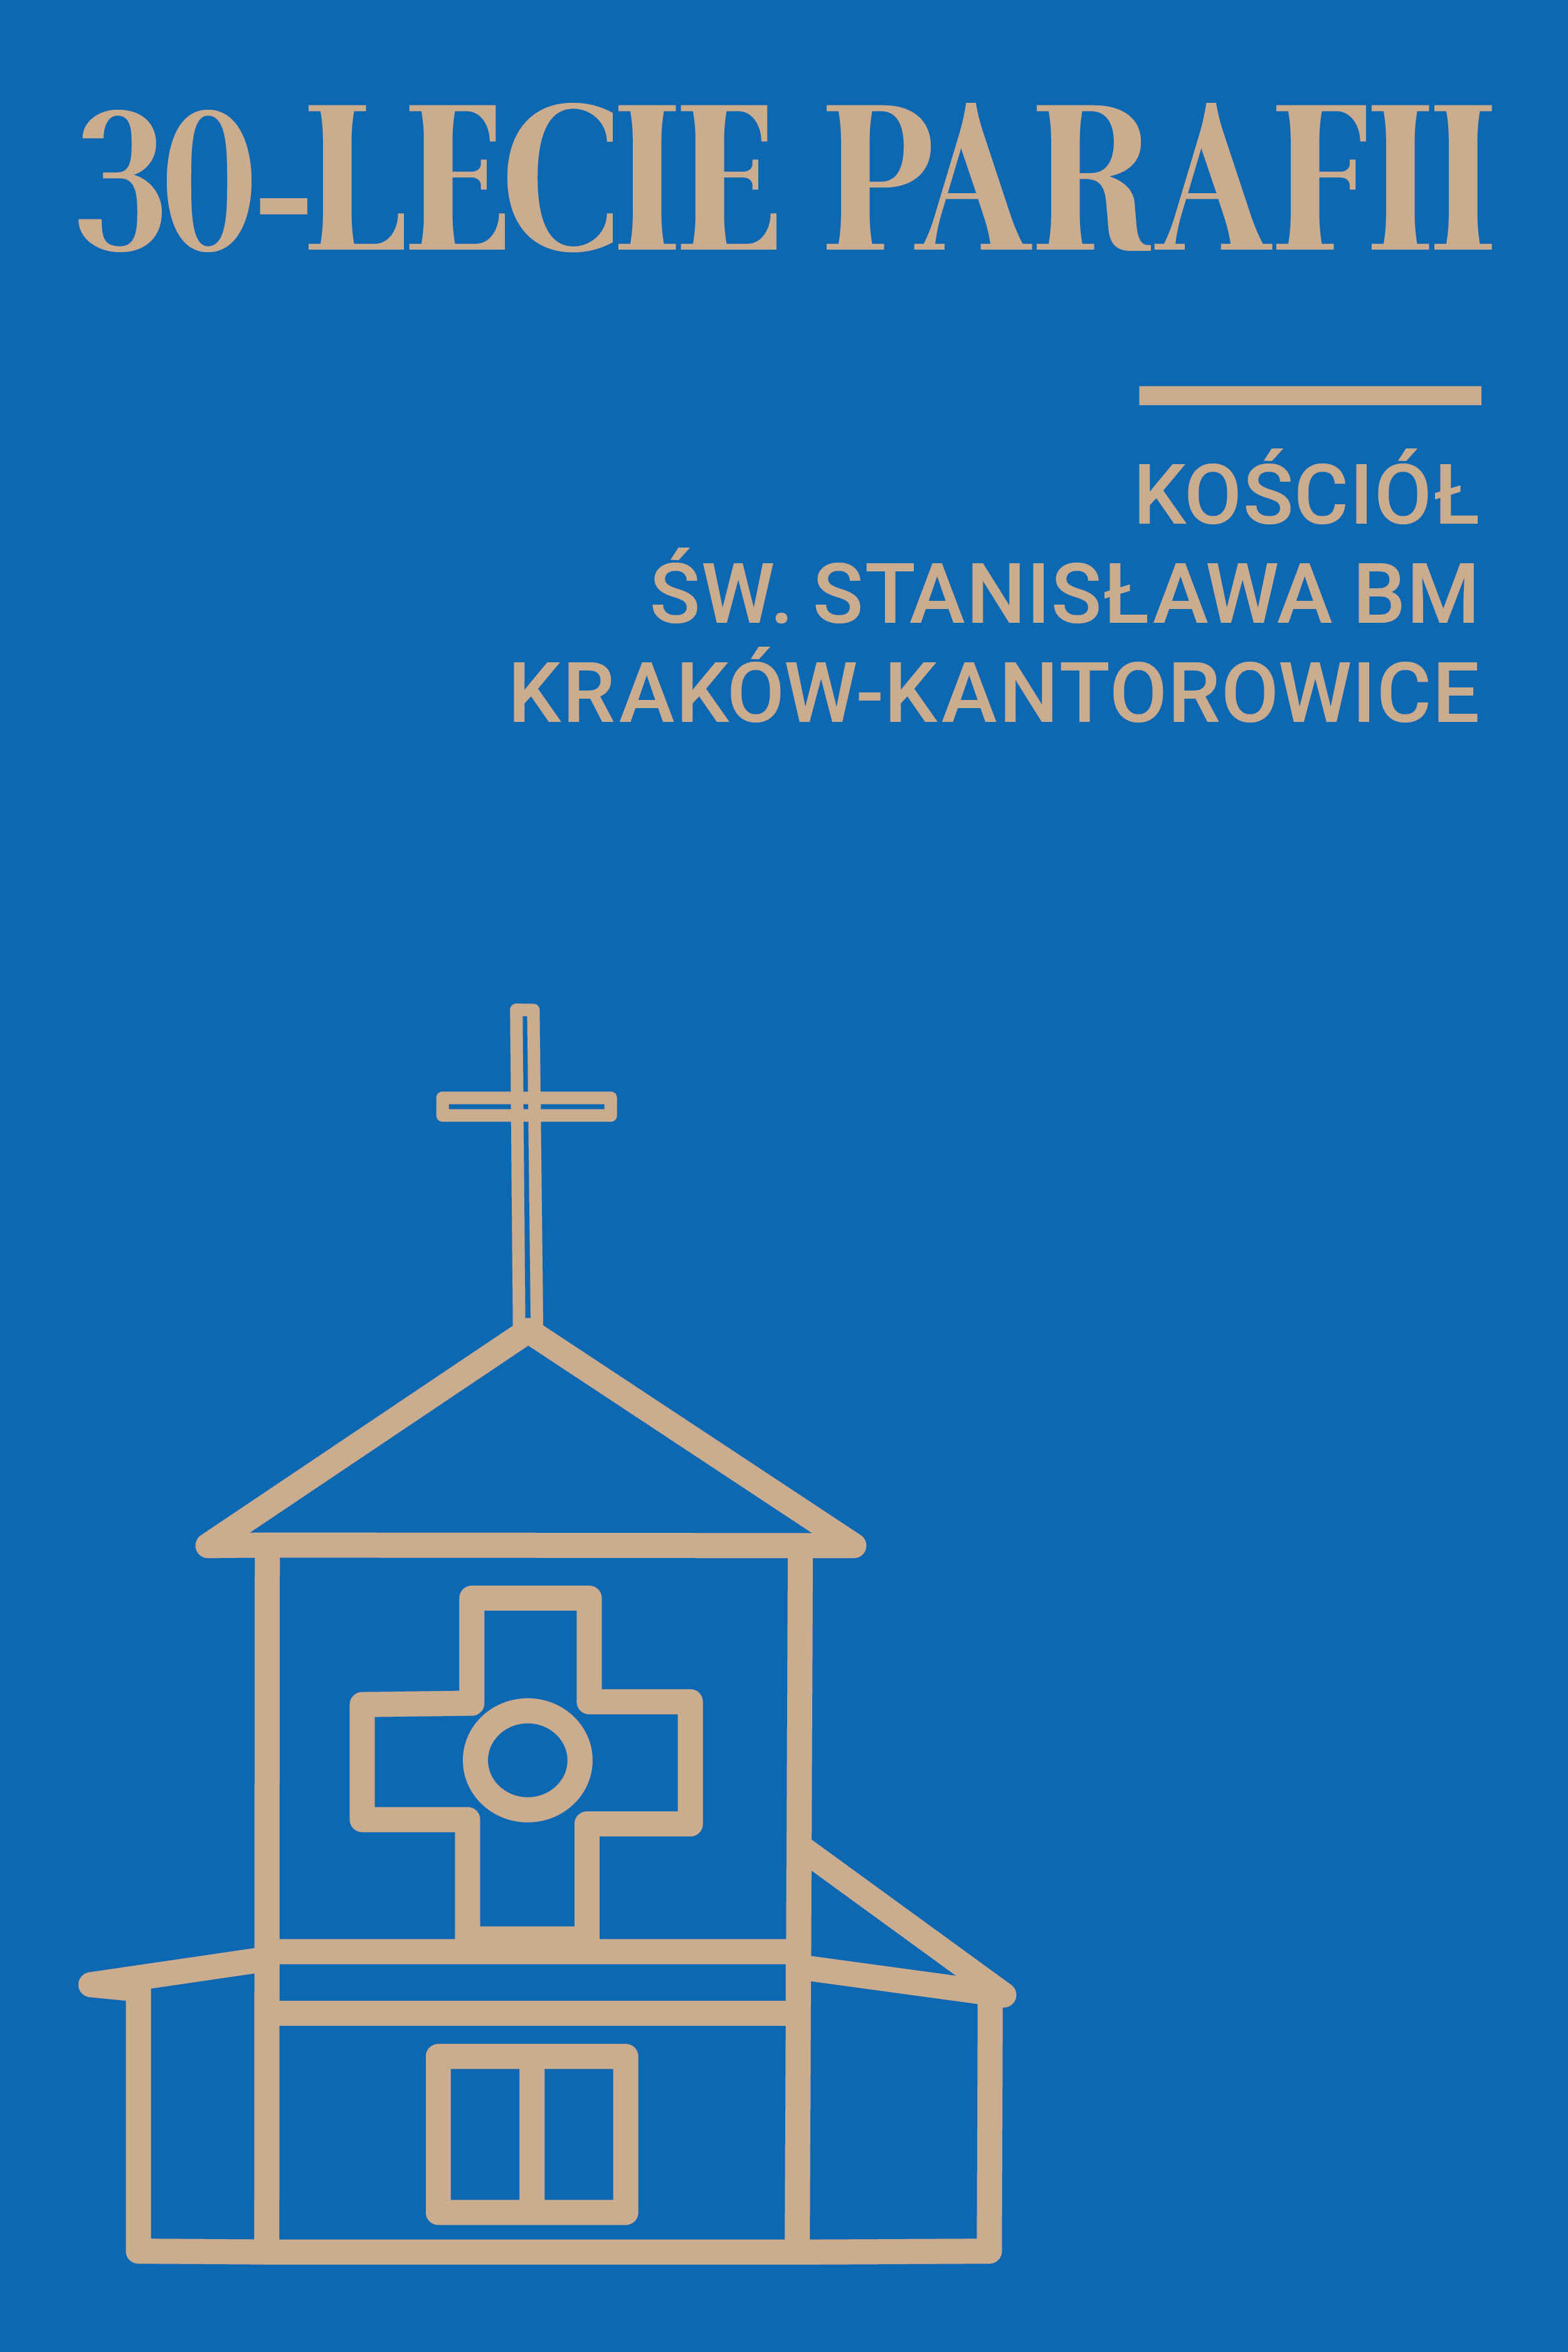 30-lecie parafii św. Stanisława BM w Krakowie-Kantorowicach